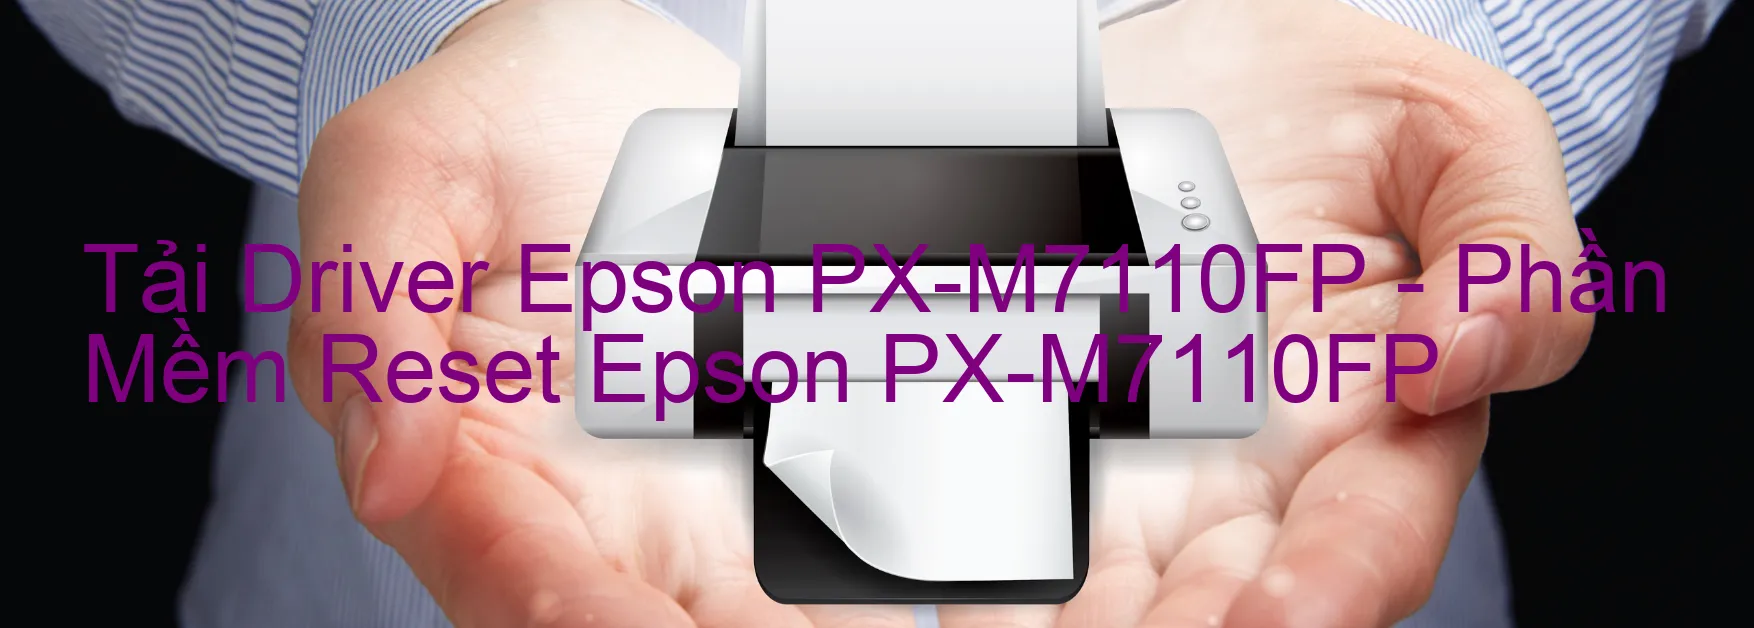 Driver Epson PX-M7110FP, Phần Mềm Reset Epson PX-M7110FP